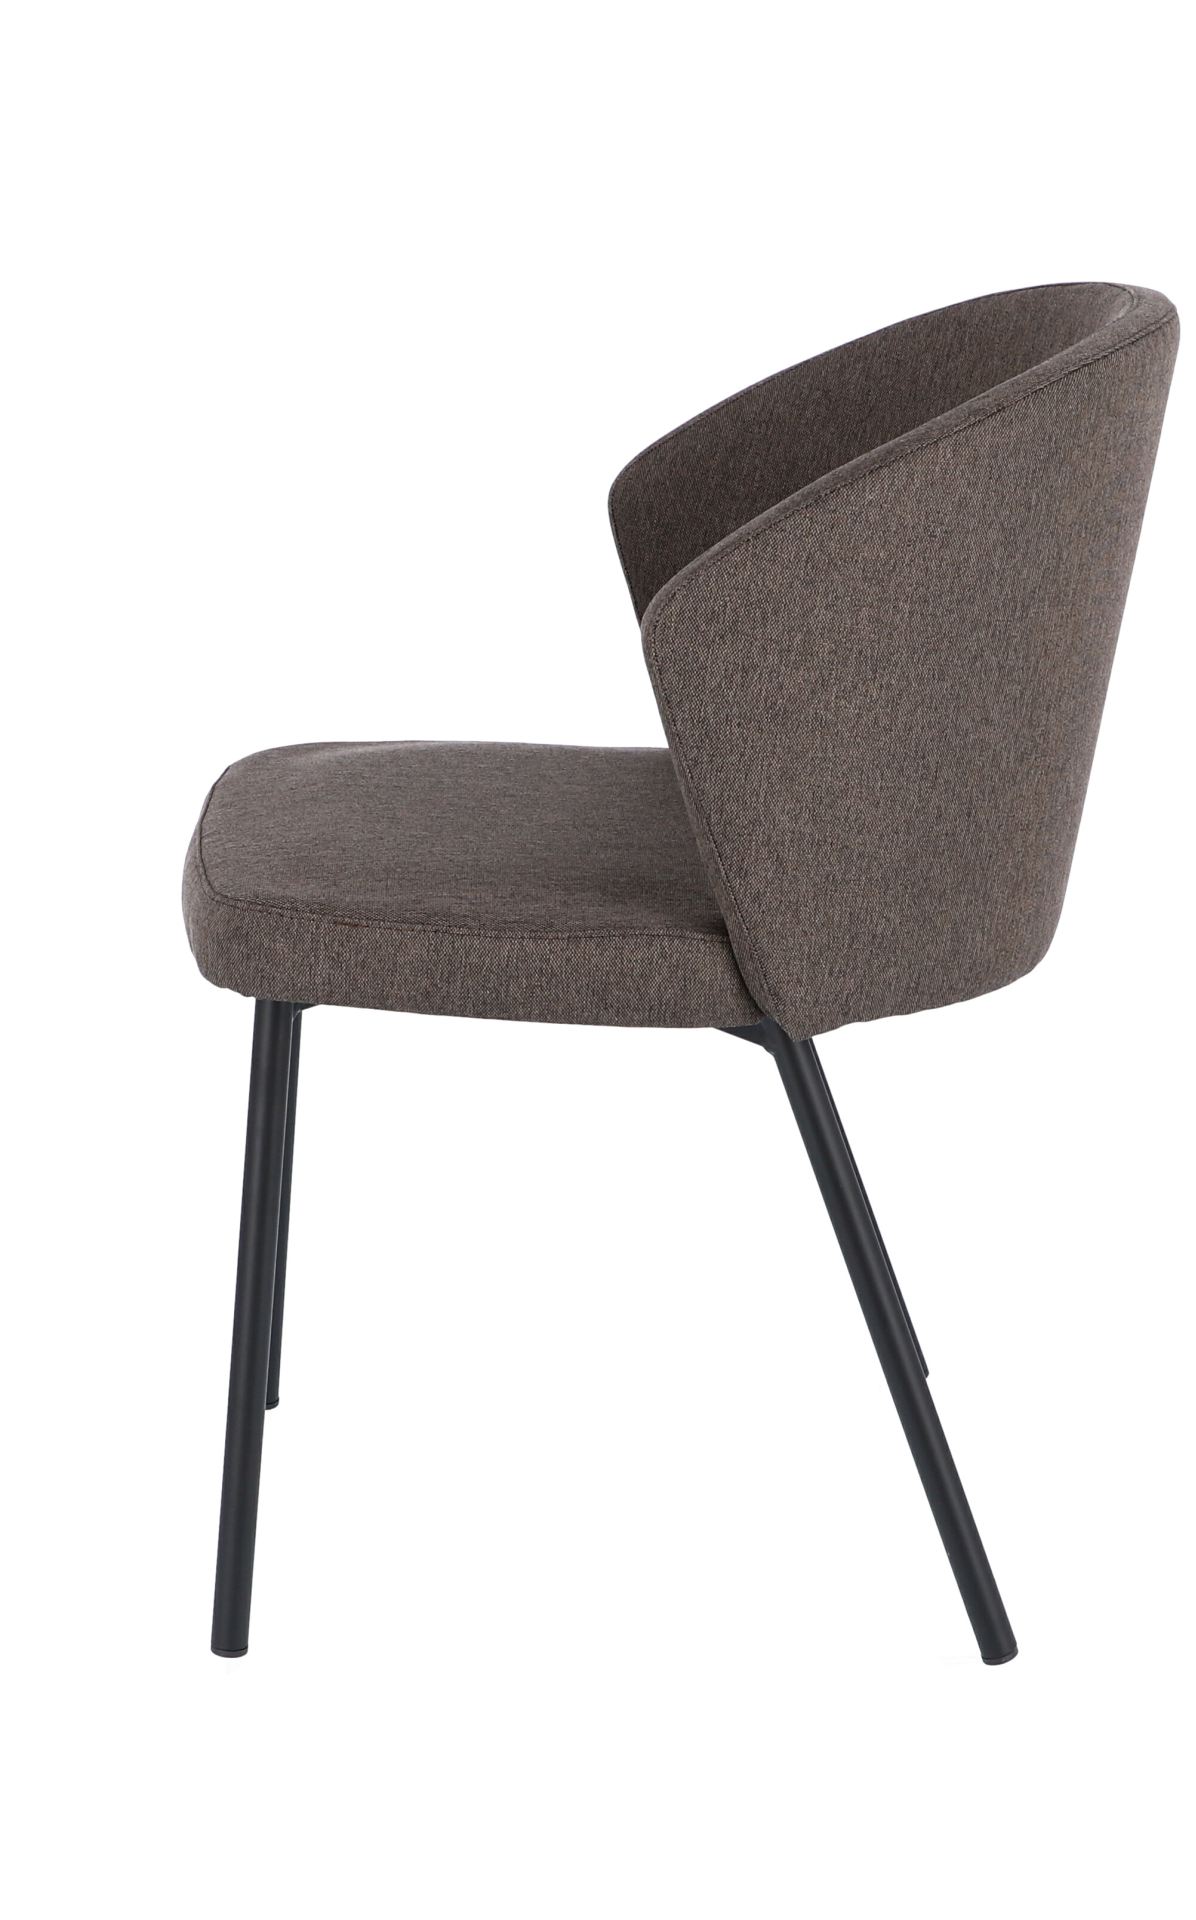 Der moderne Stuhl Mila wurde aus einem Metall Gestell hergestellt. Die Sitz- und Rückenfläche ist aus einem Stoff Bezug. Die Farbe des Stuhls ist Braun. Es ist ein Produkt der Marke Jan Kurtz.